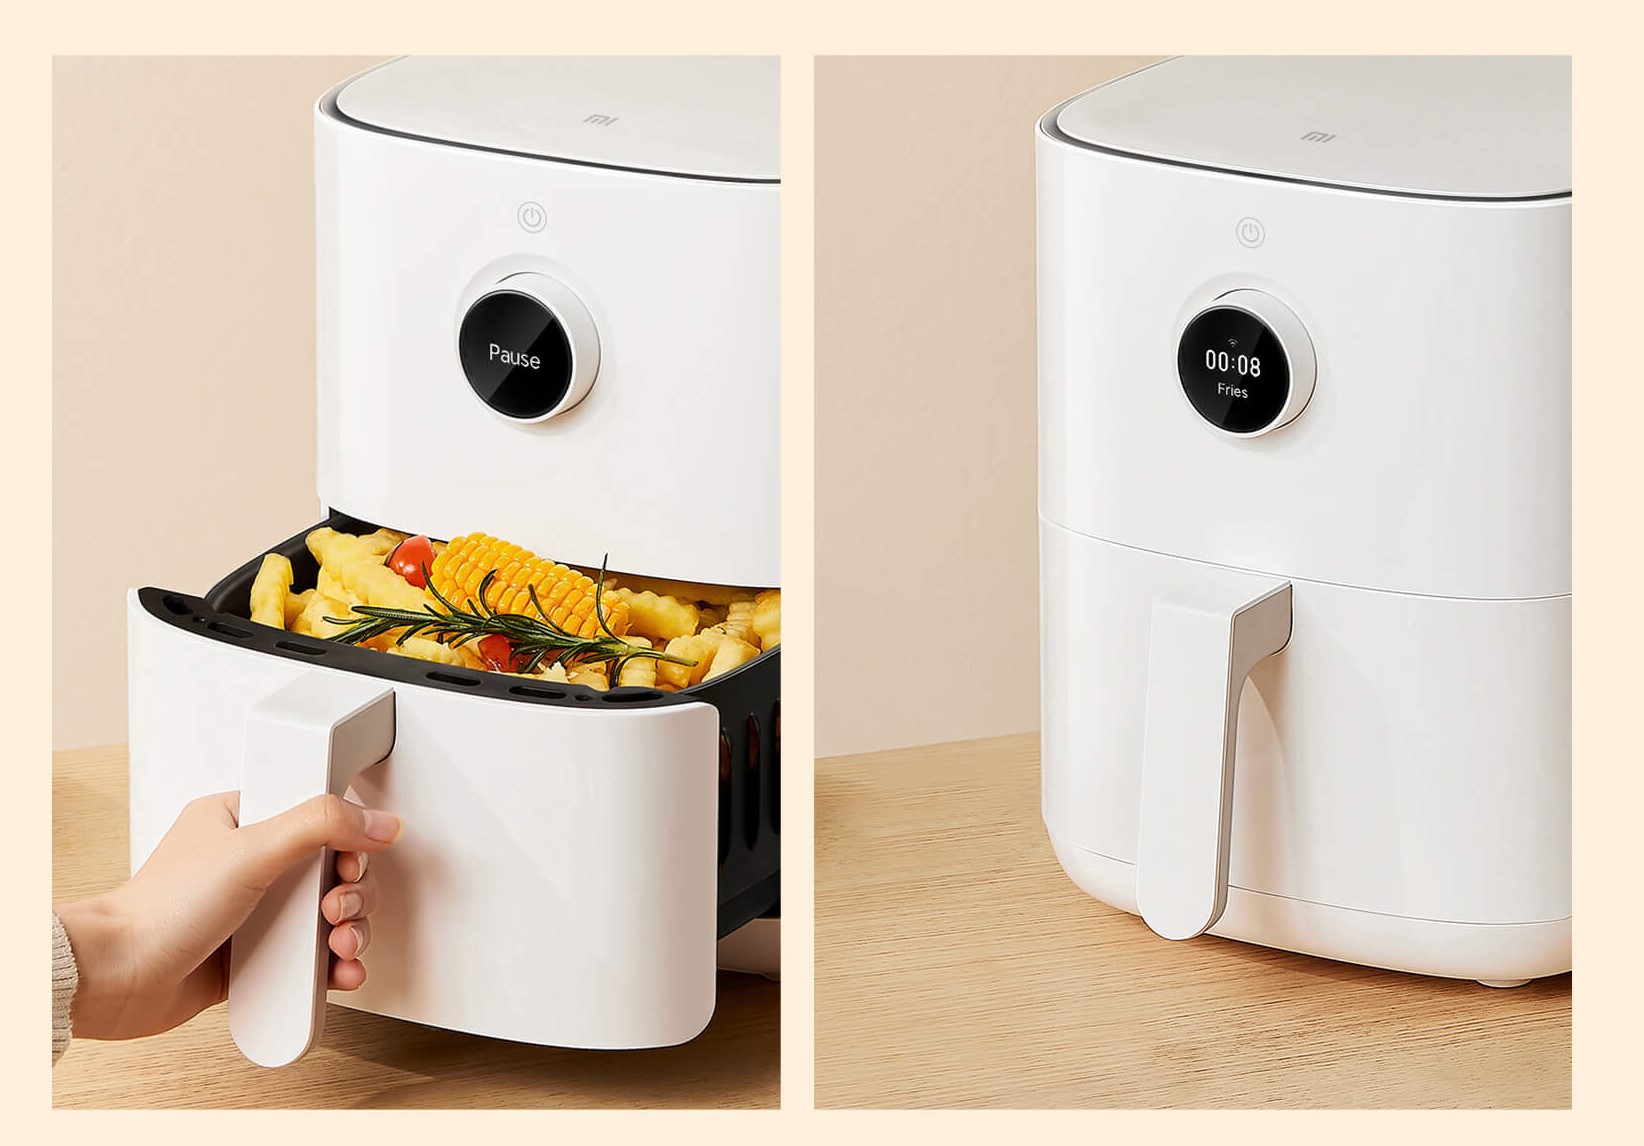 Cocina más saludable con la Freidora Xiaomi Mi Smart Air Fryer! - Grupo  Bonatel